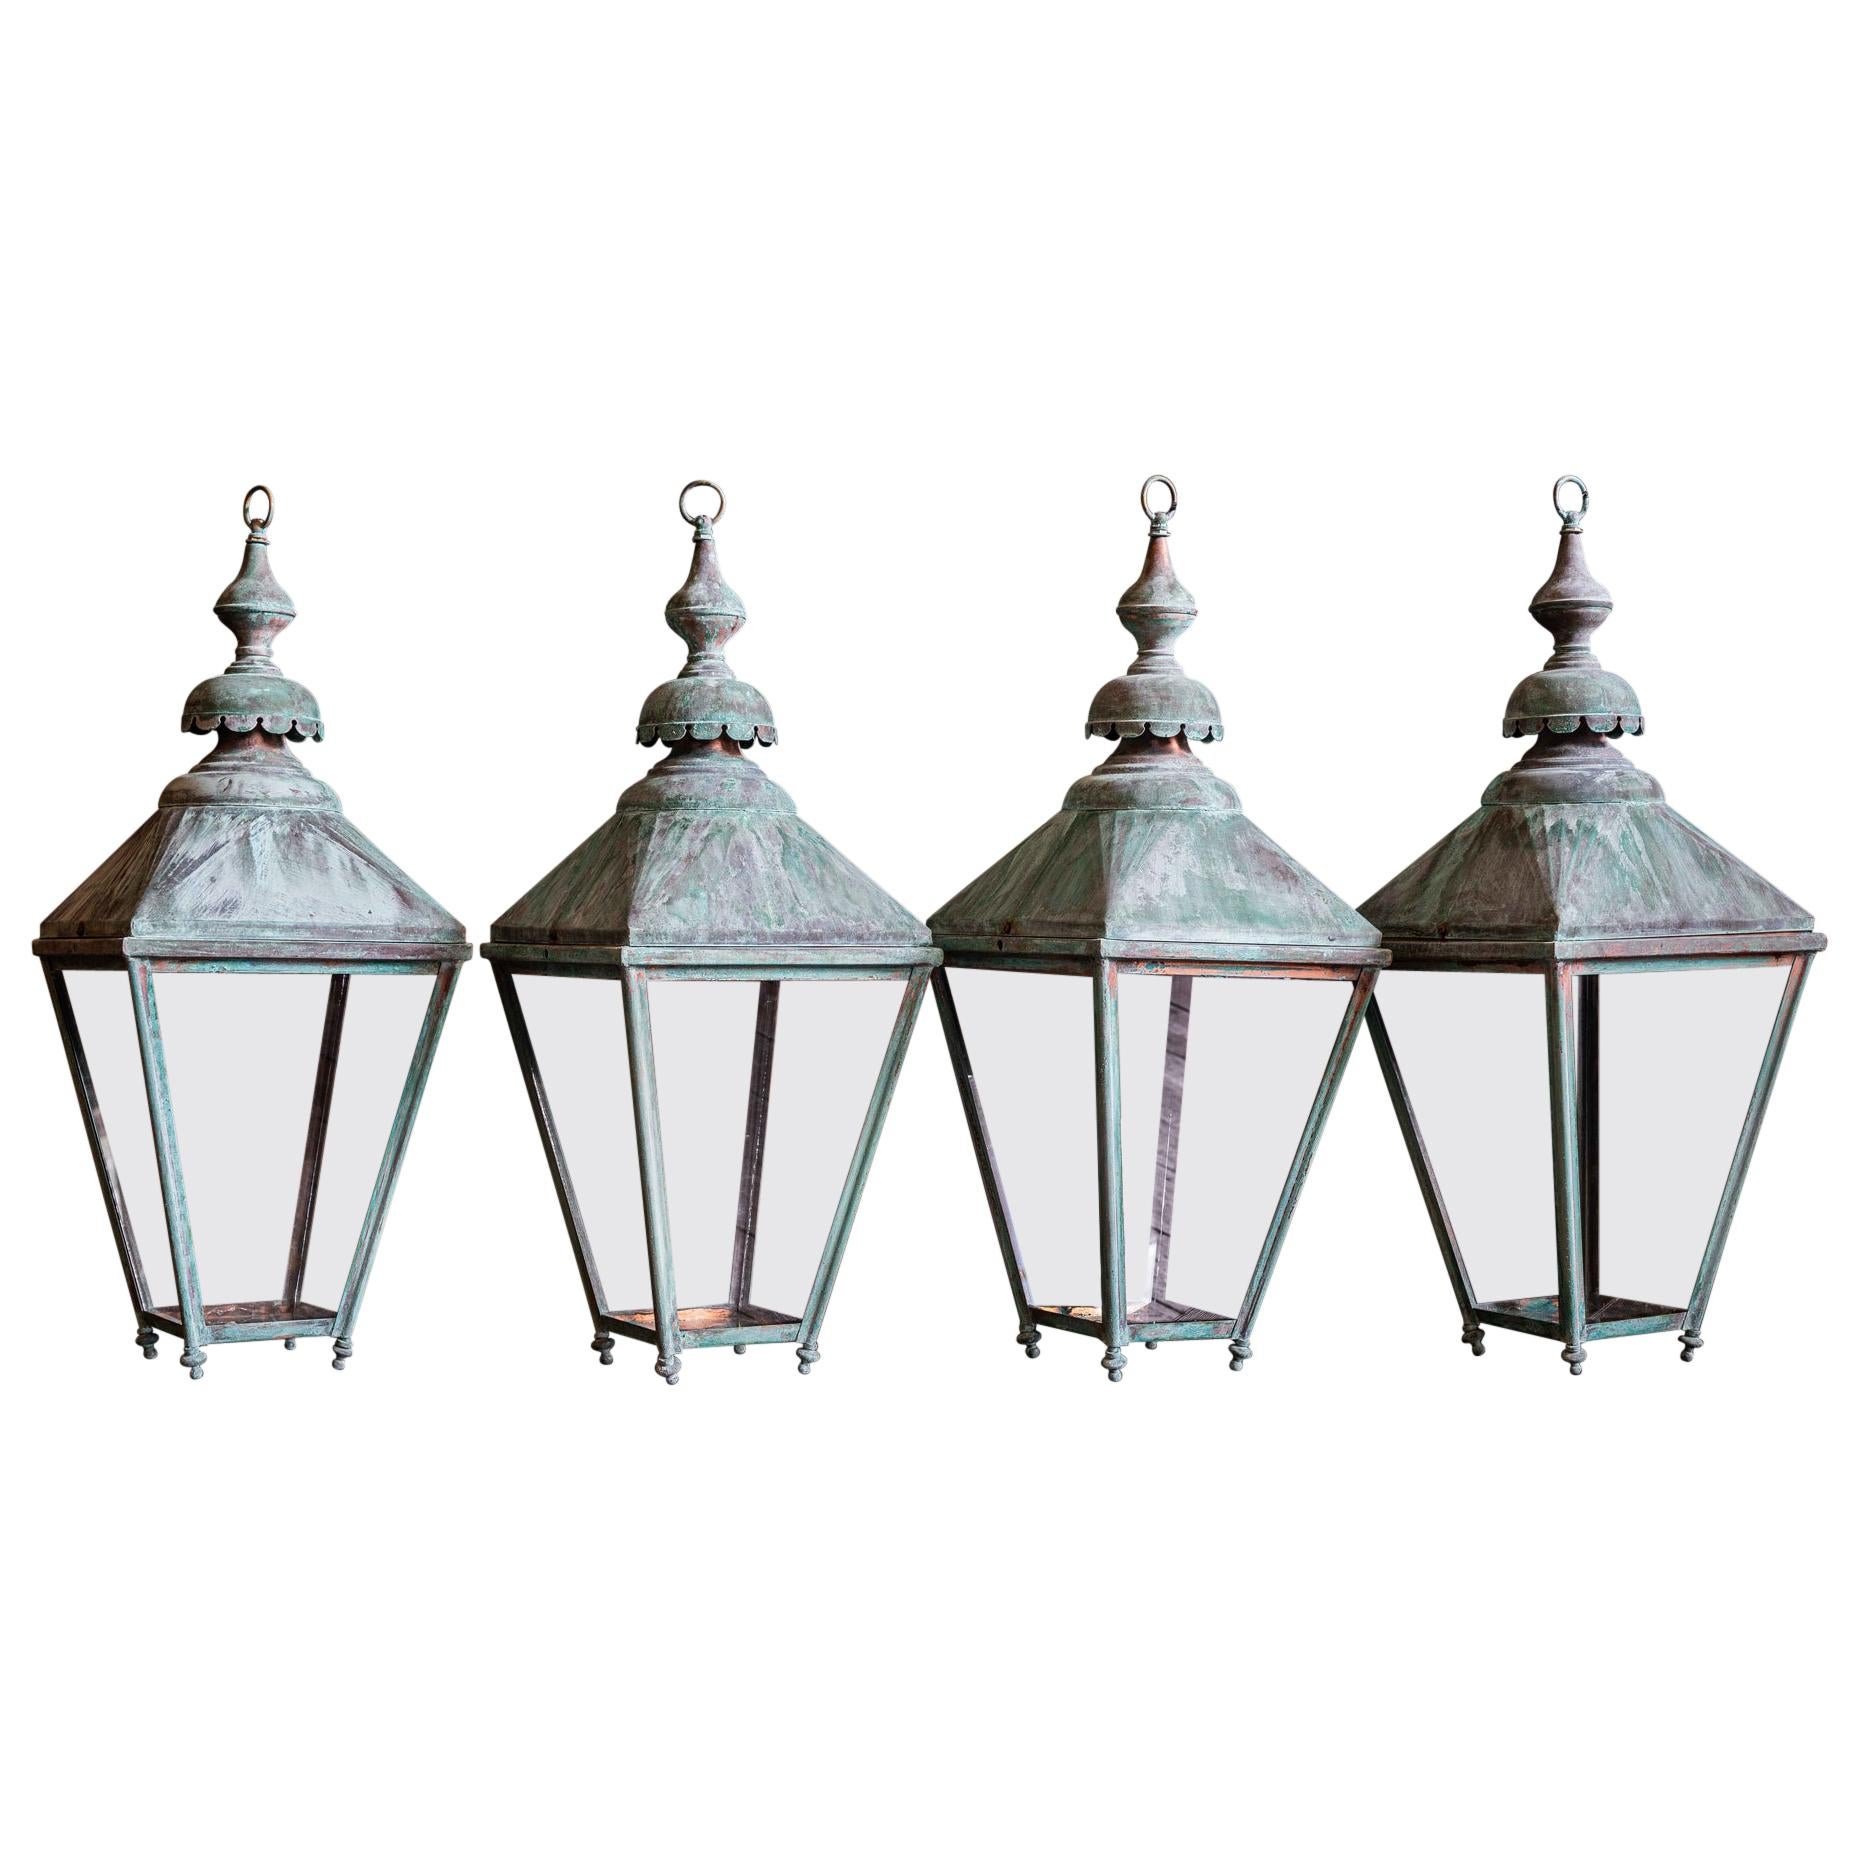 Pair of English Verdigris Copper Lanterns